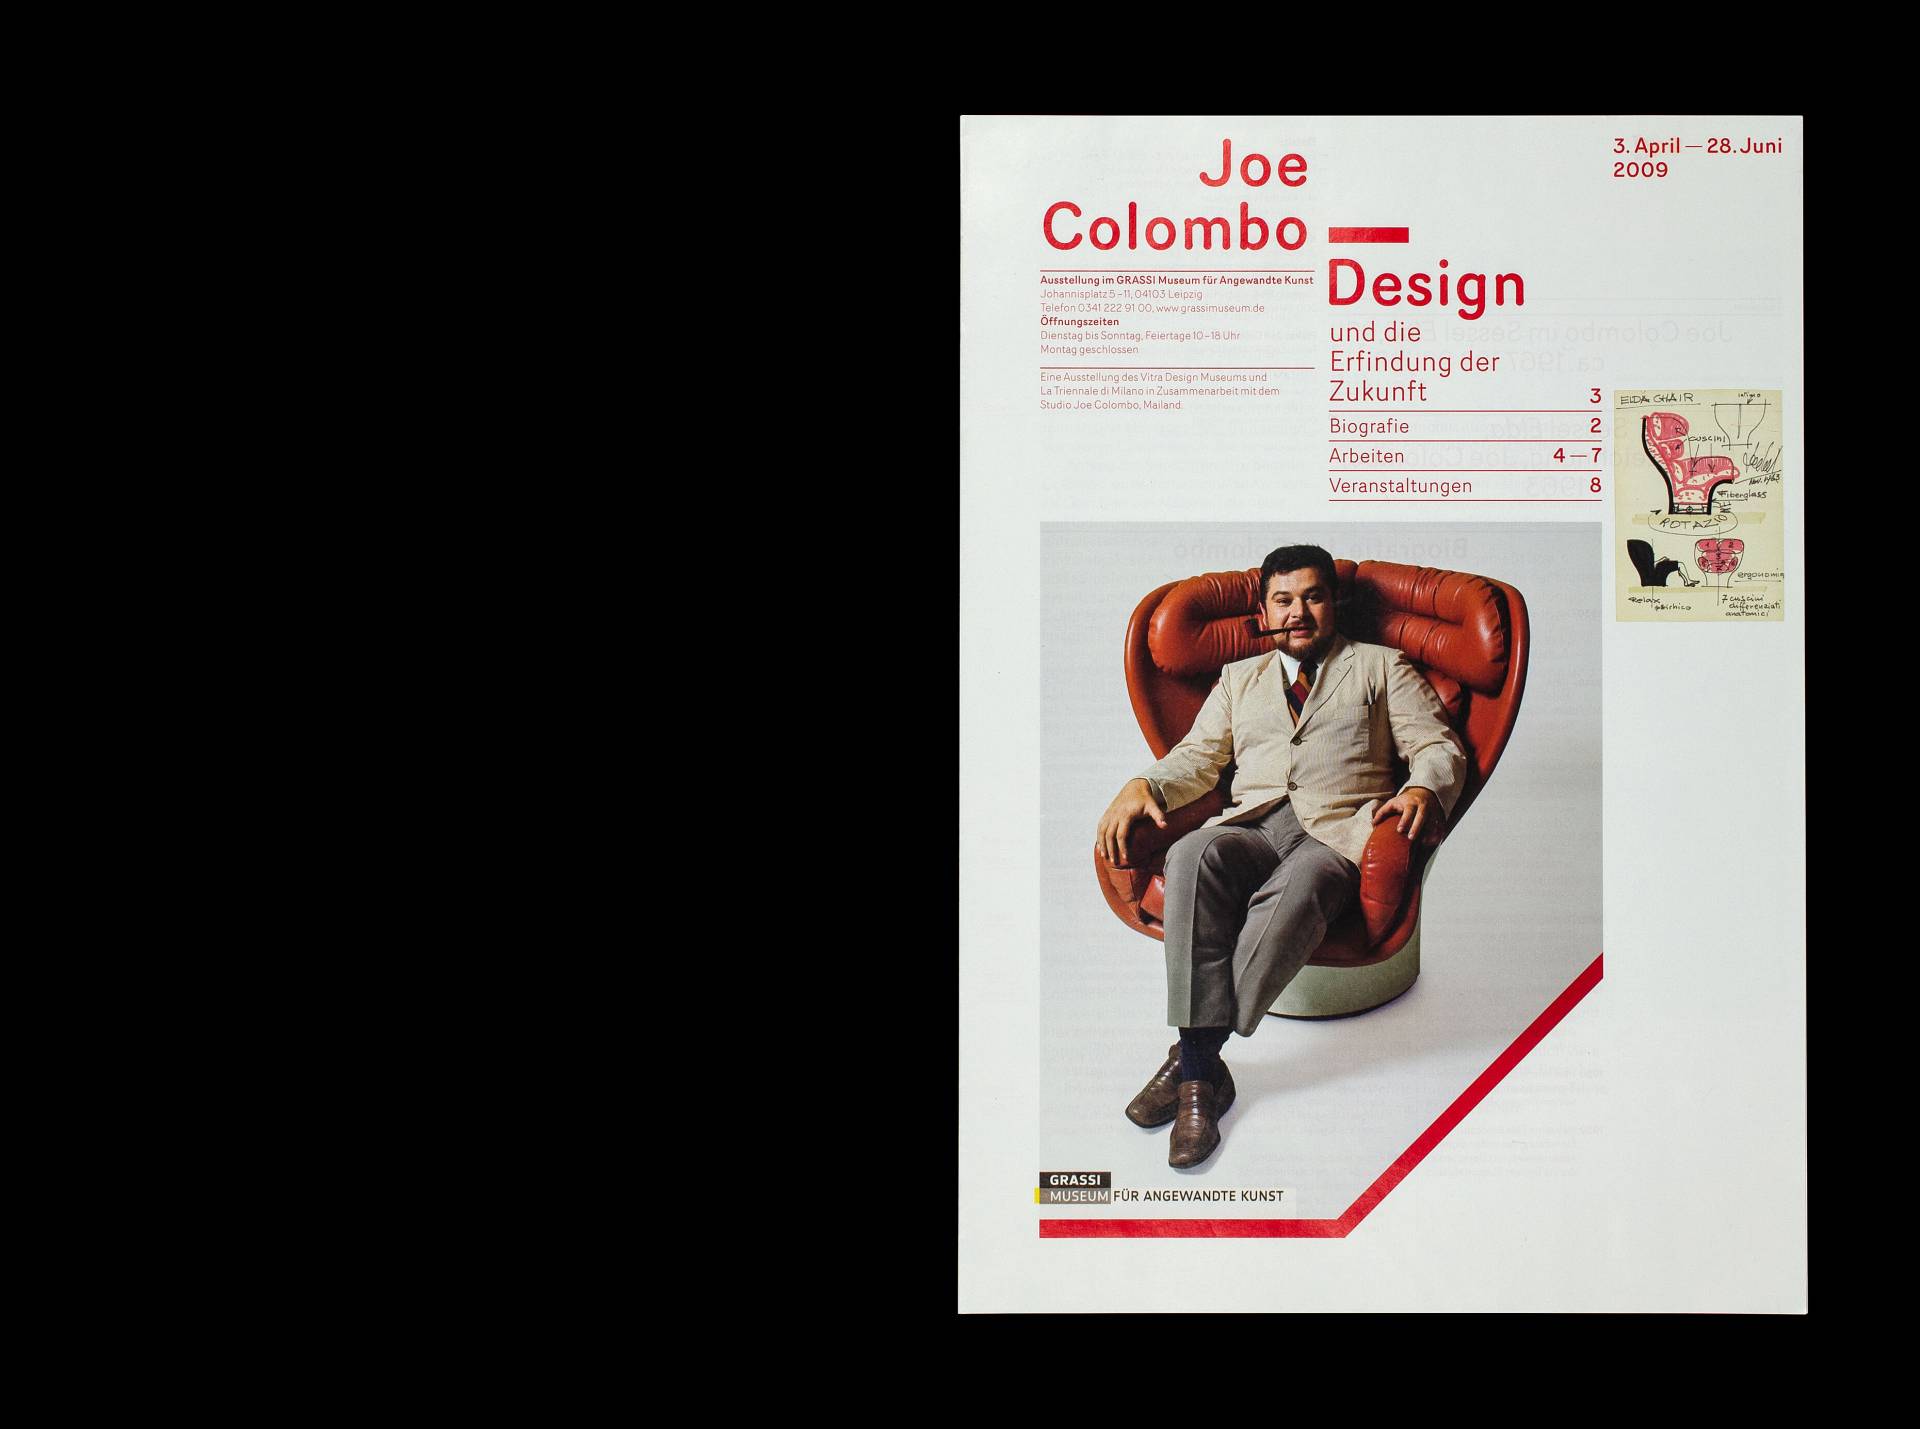 Visuelle Identität zur Ausstellung »Joe Colombo – Design und die Erfindung der Zukunft« für das Grassi Museum für Angewandte Kunst, Leipzig